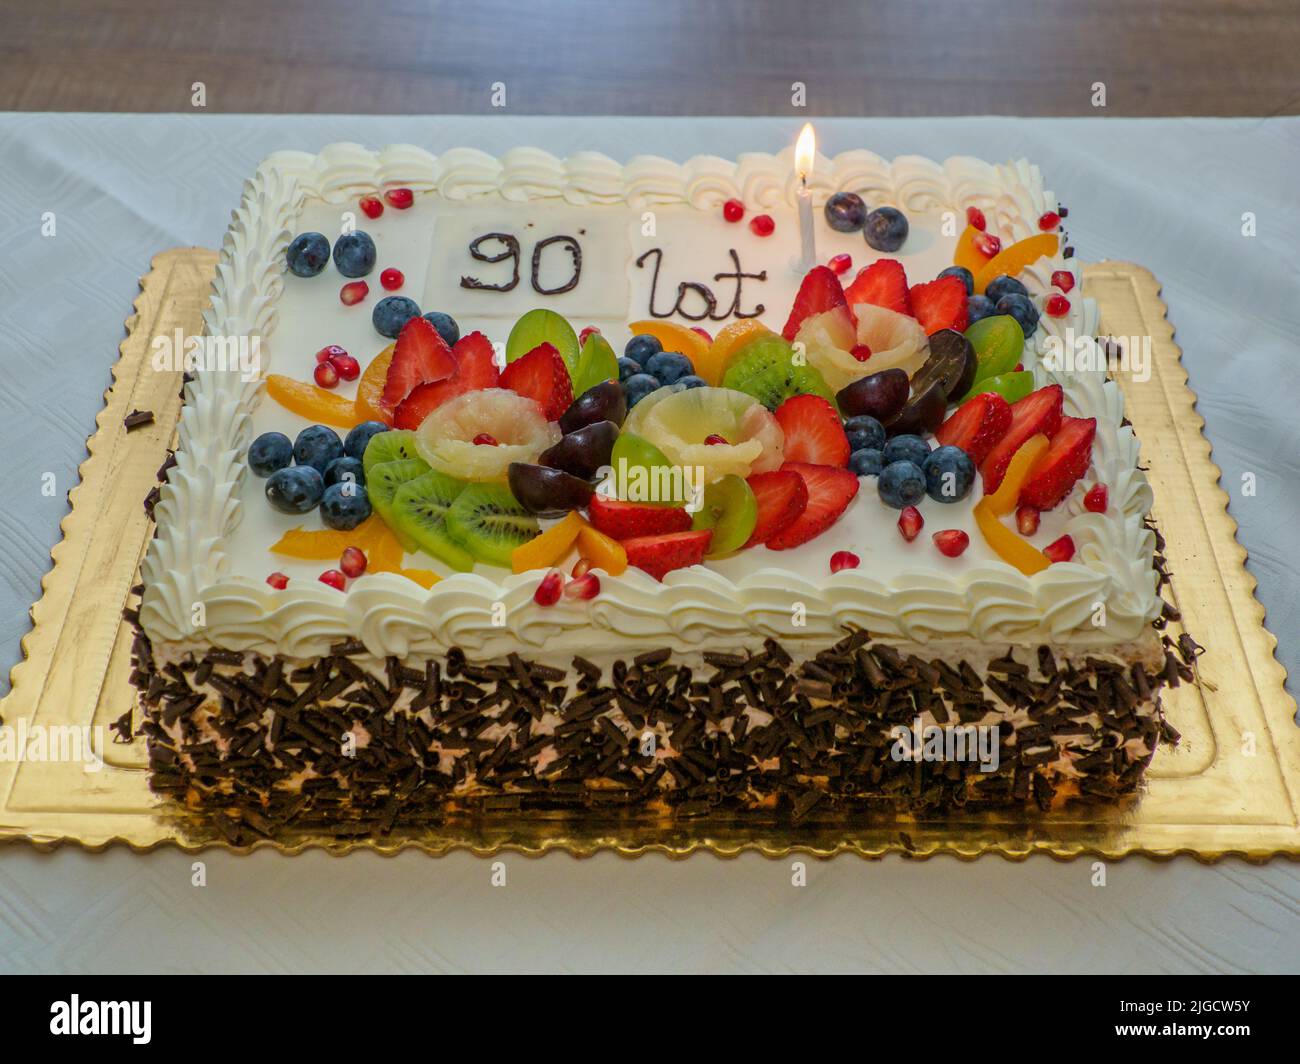 100+] Happy Birthday Cake Pictures